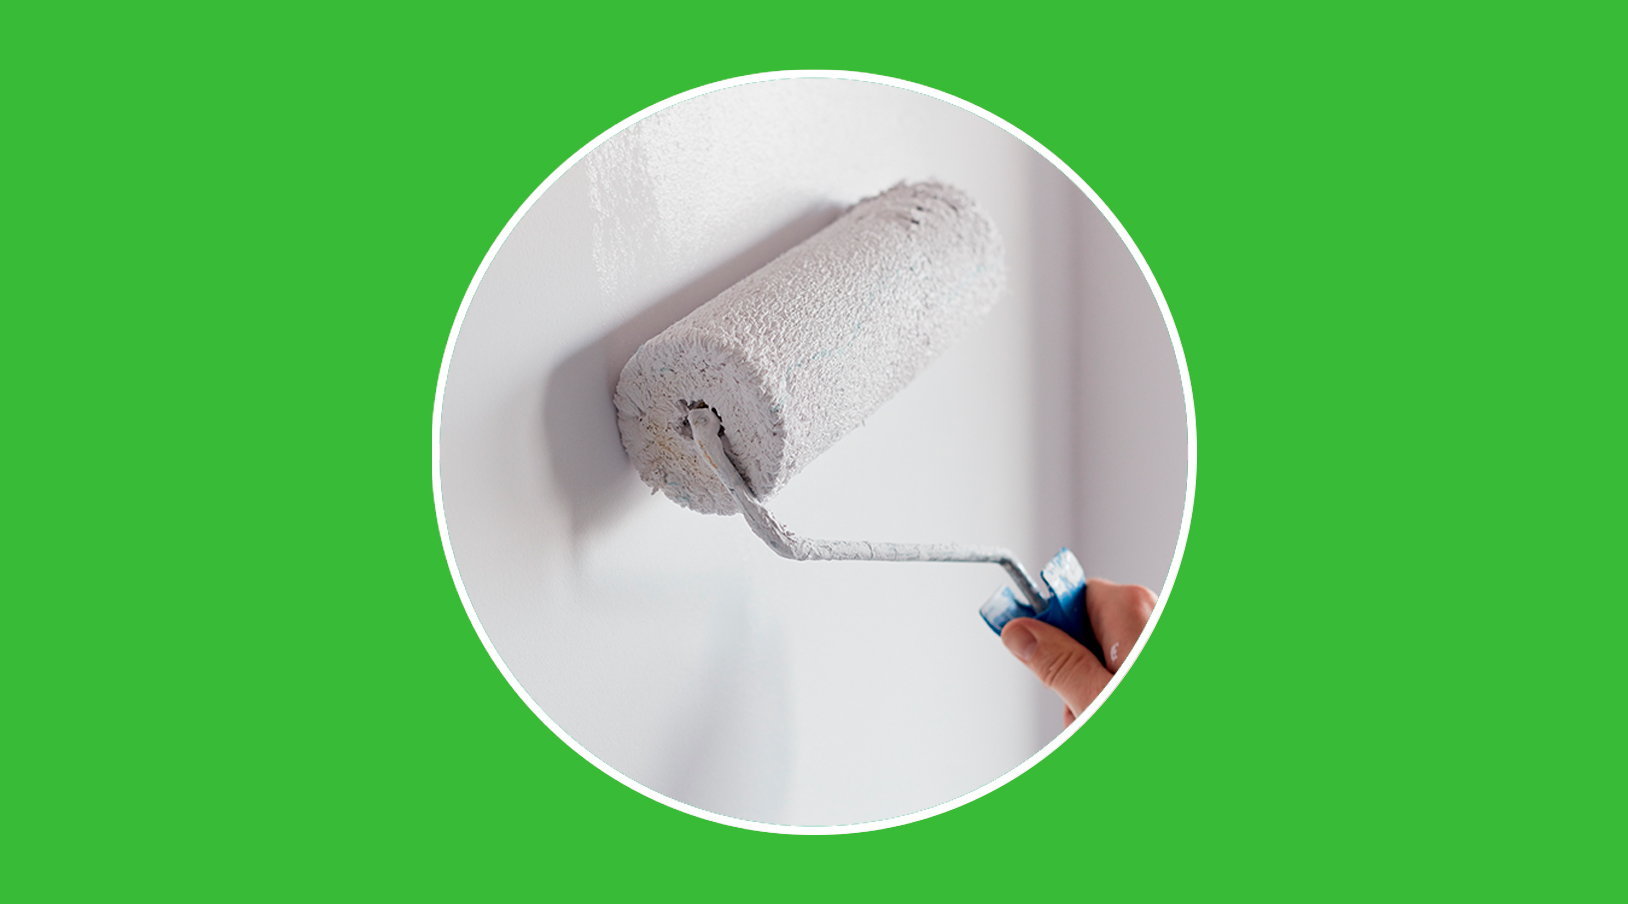 Pintar las paredes de casa: ¿funciona para ahorrar energía?